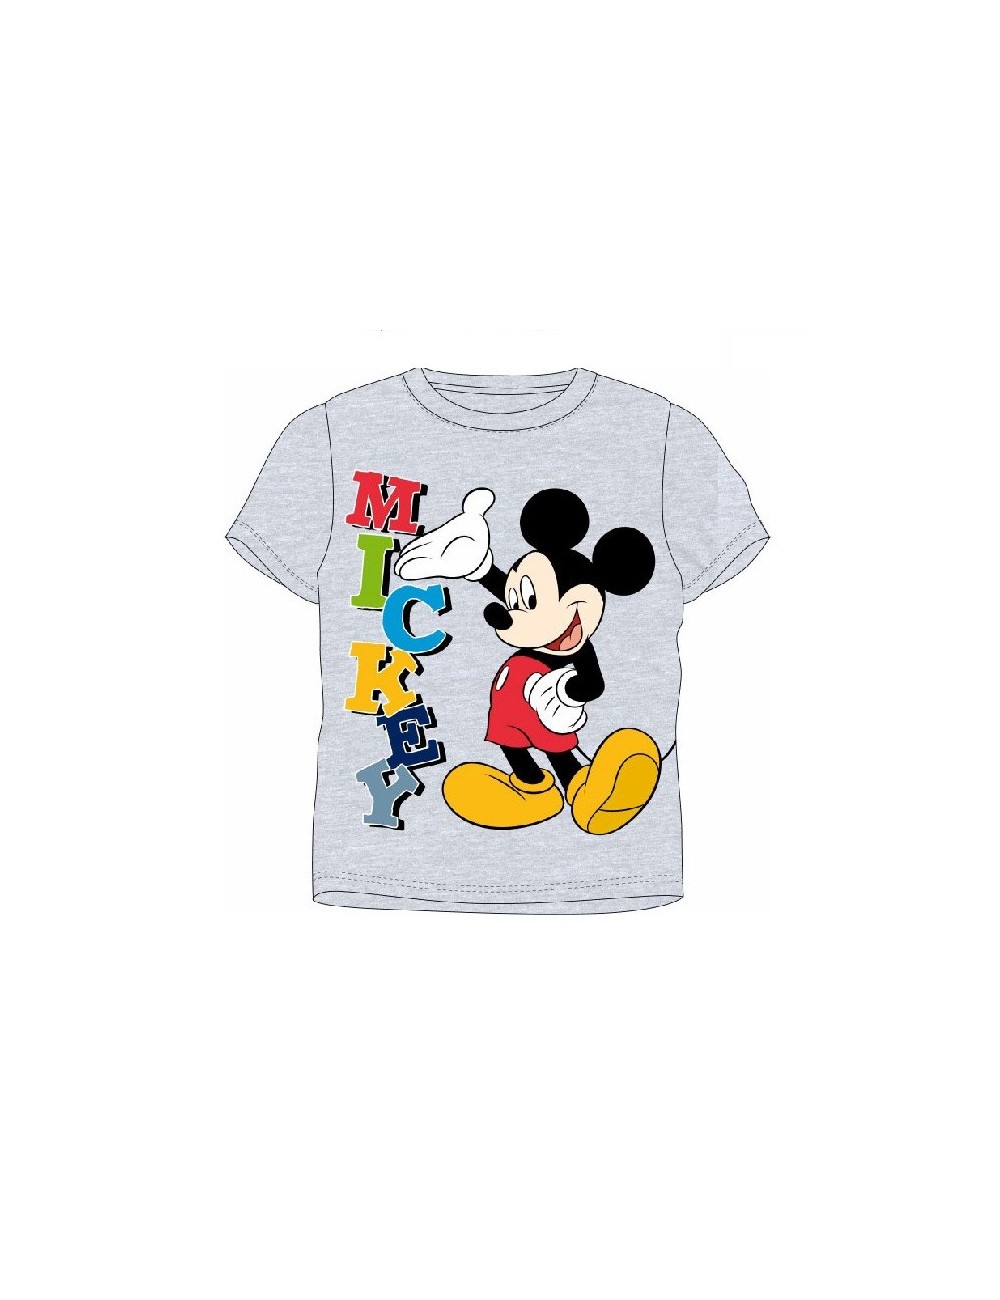 Tricou copii Disney Mickey Mouse  4 - 8 ani, gri